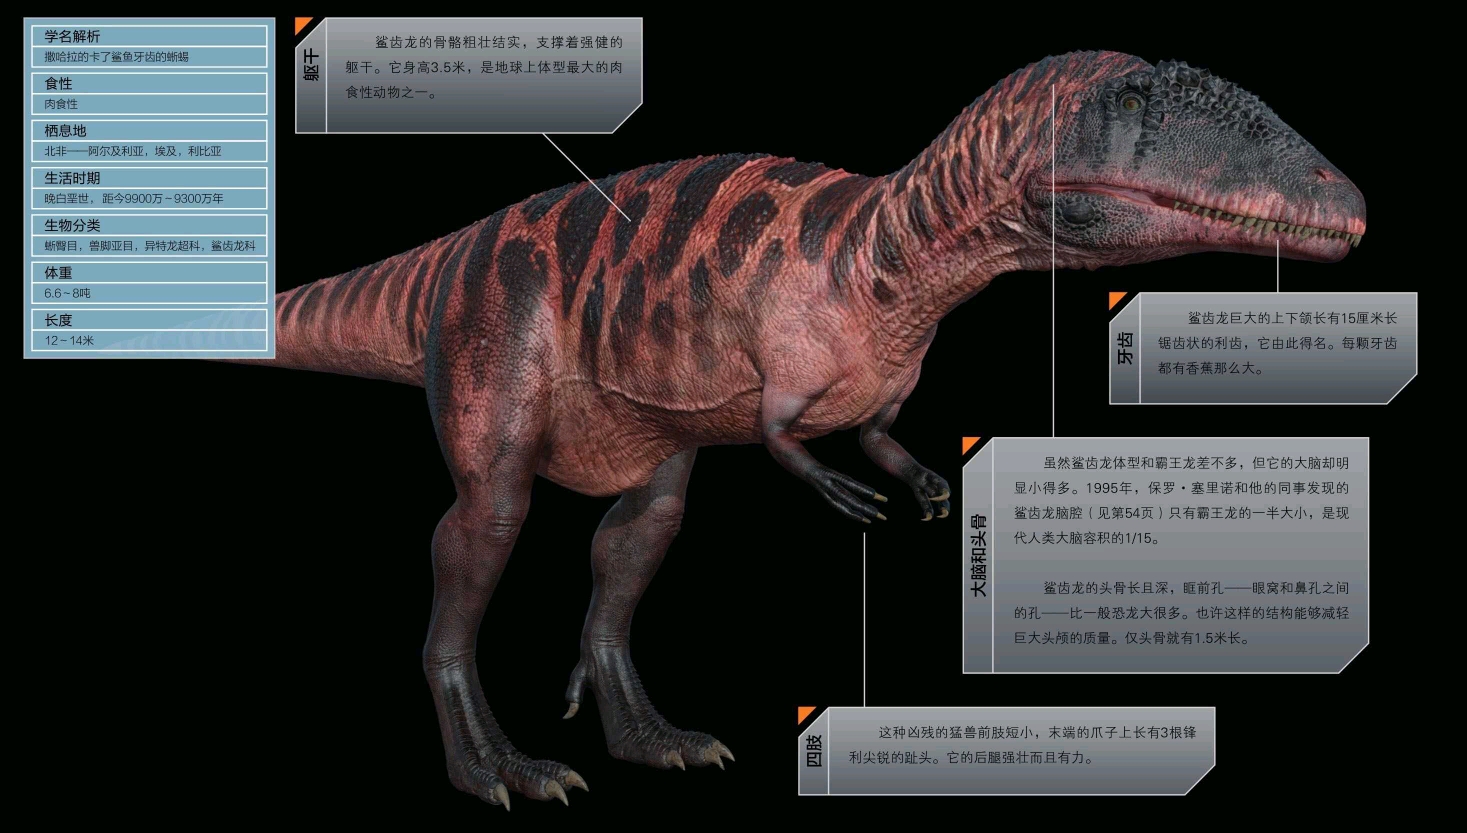 恐龙档案 鲨齿龙(carcharodontosaurussaharicus) 发音 car-car-o-don